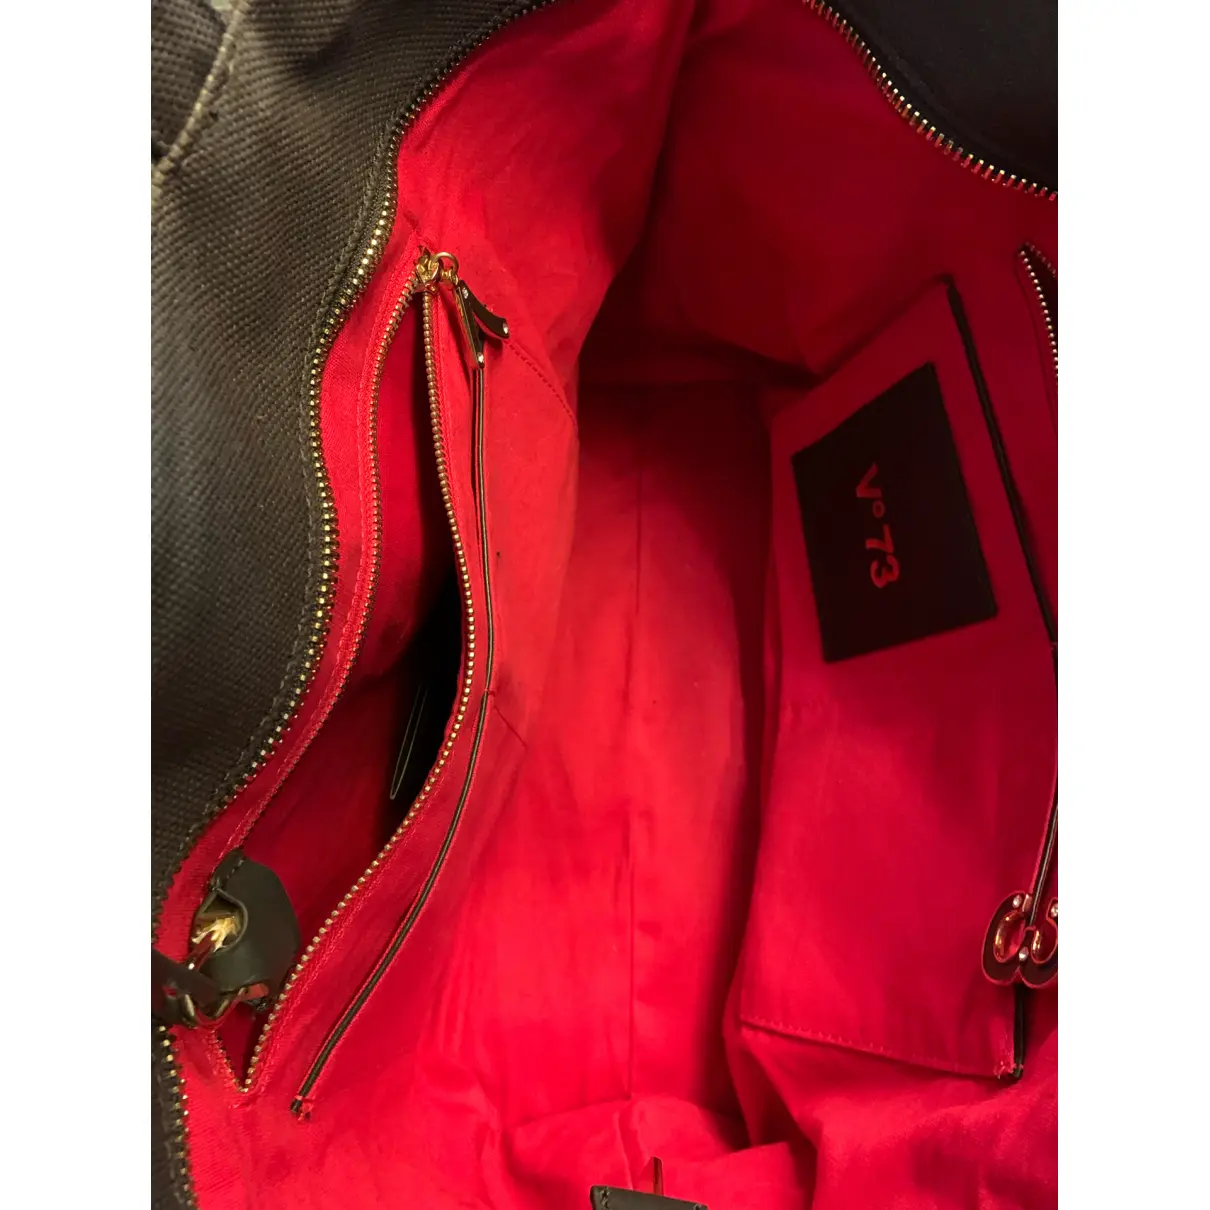 Cloth handbag V 73